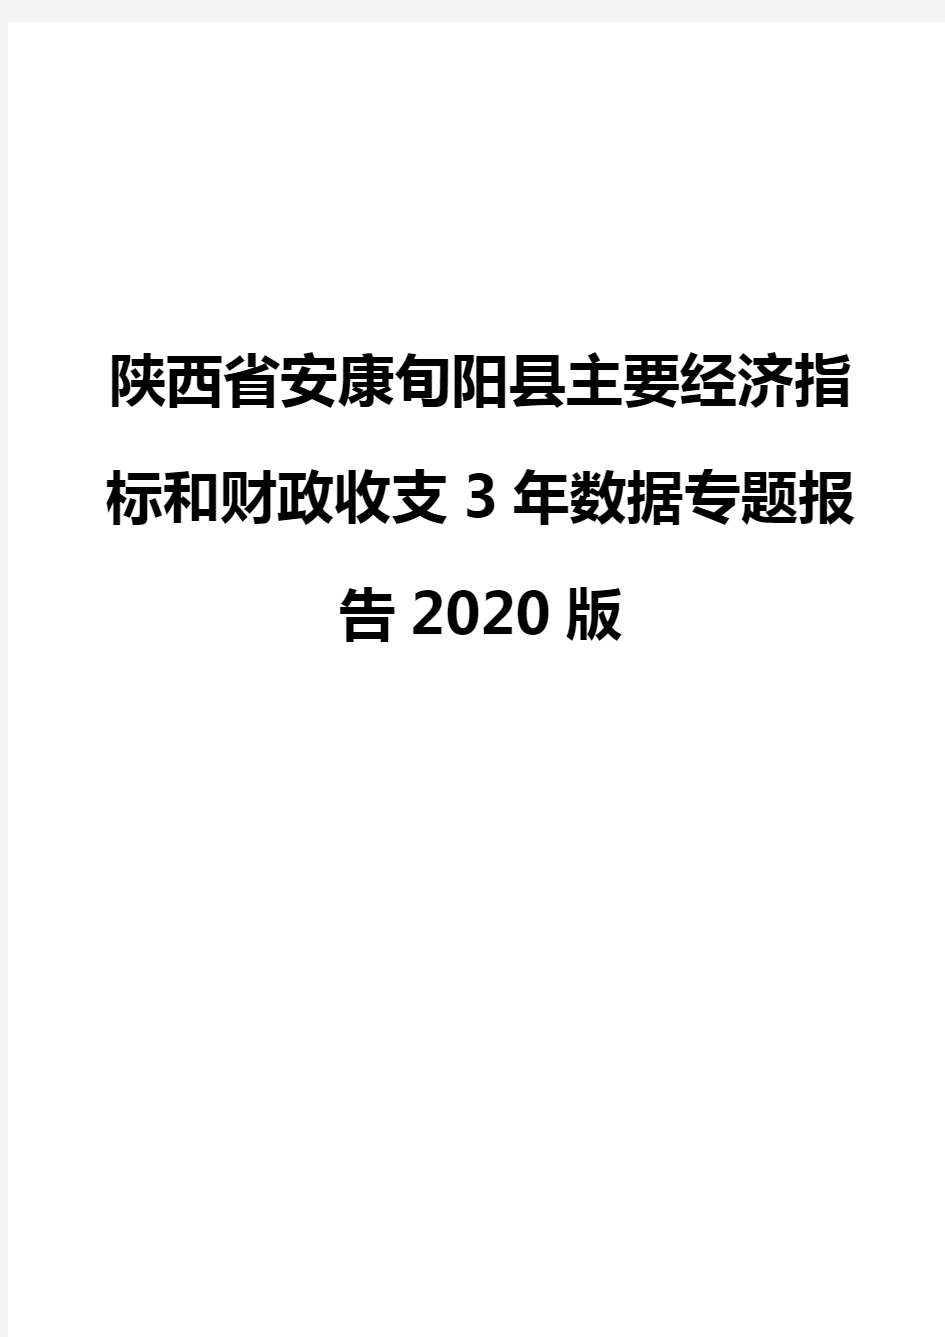 陕西省安康旬阳县主要经济指标和财政收支3年数据专题报告2020版